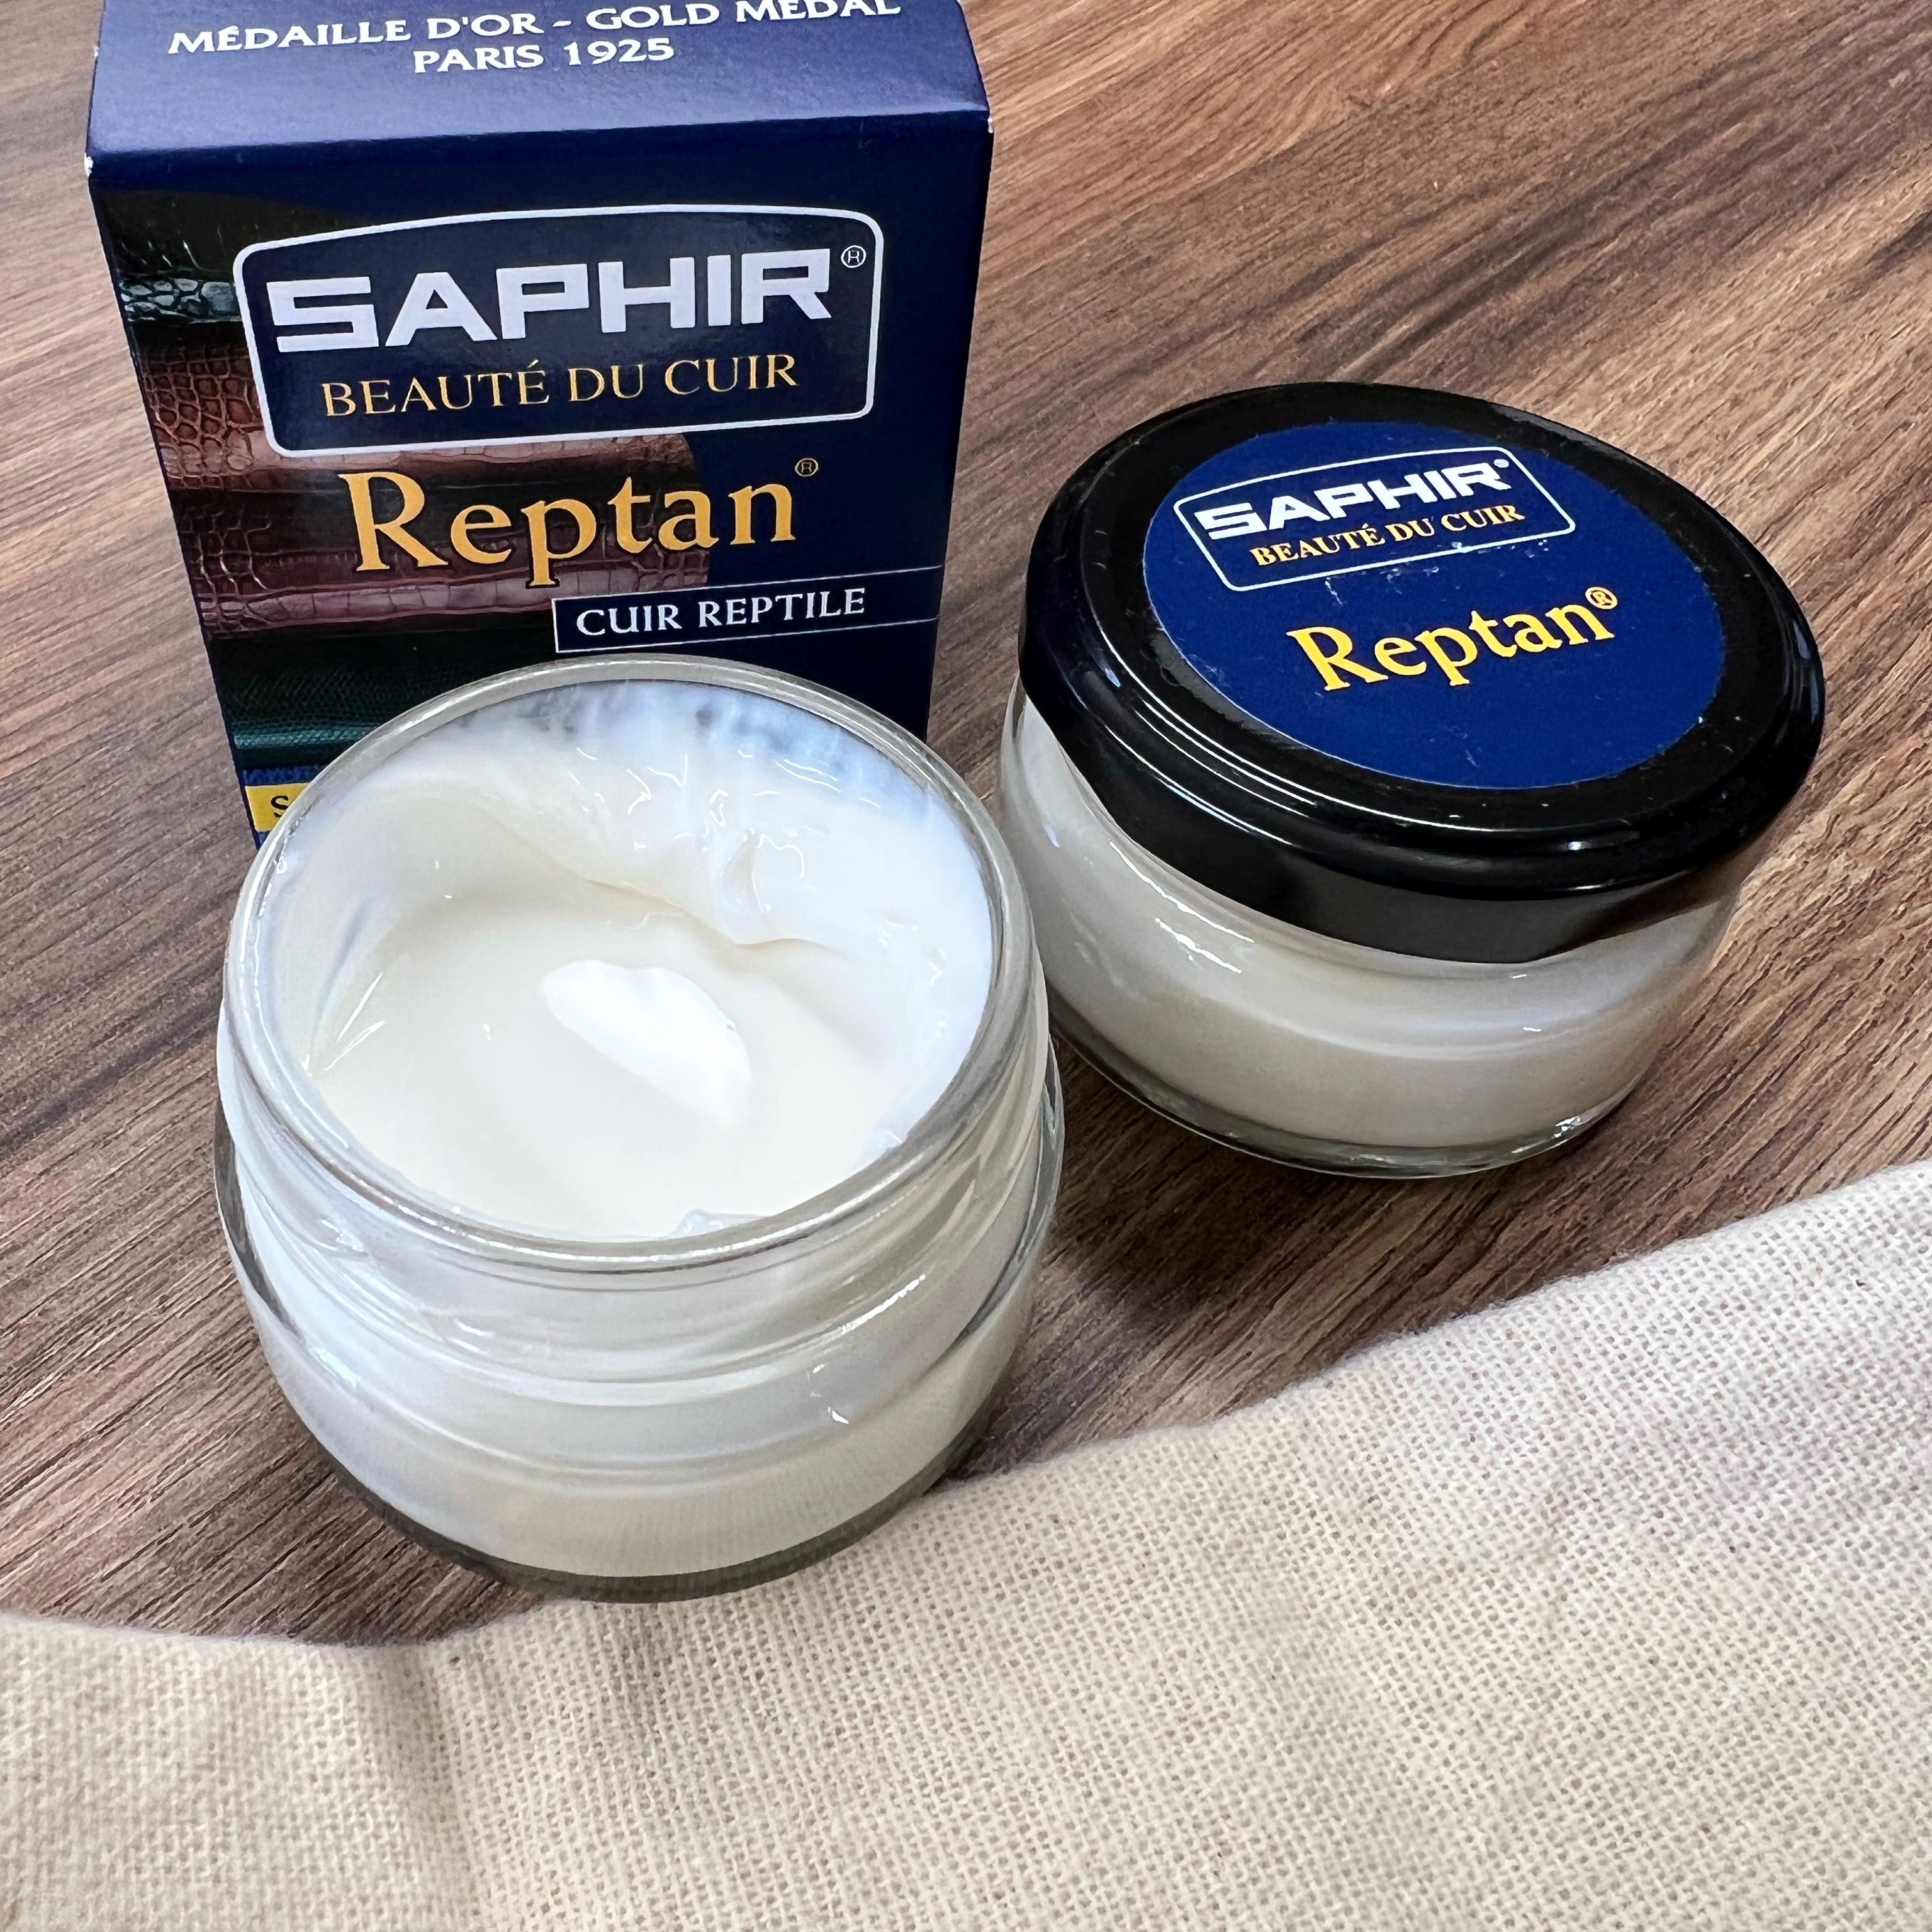 Saphir Reptan Exotic Leather Cream 50ml, Reptile Skin Conditioner